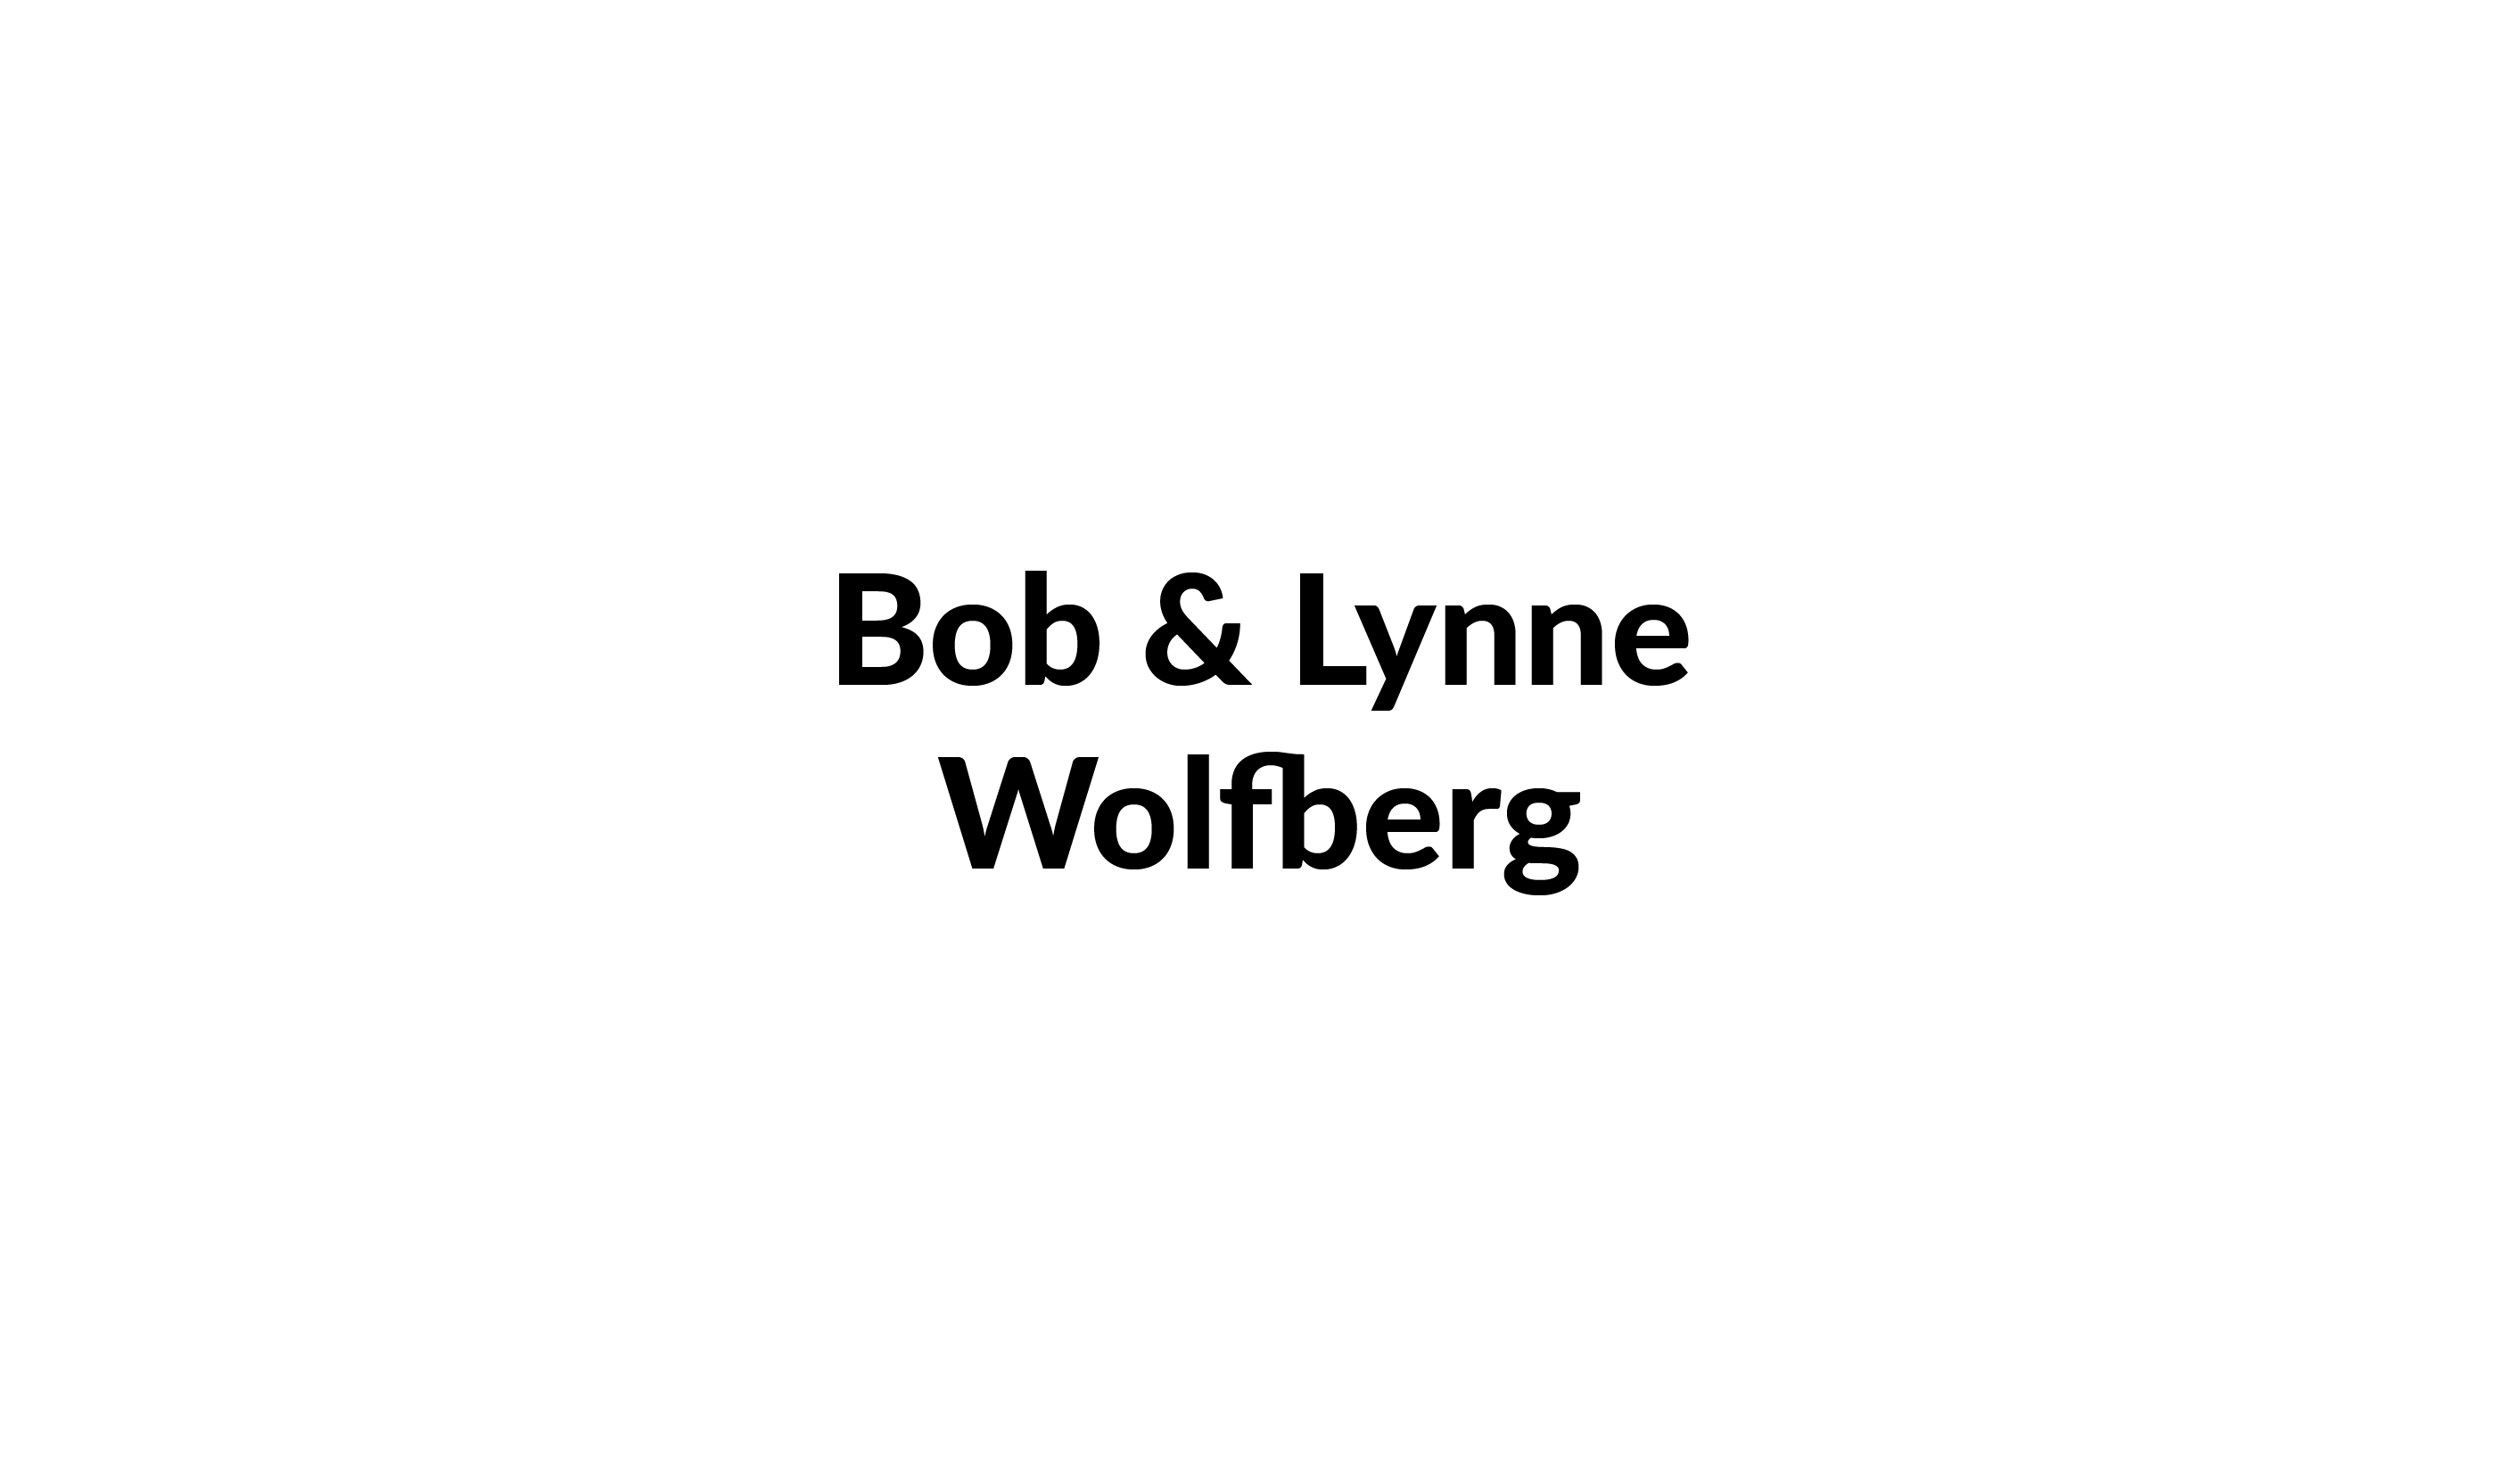 Bob & Lynne Wolfberg